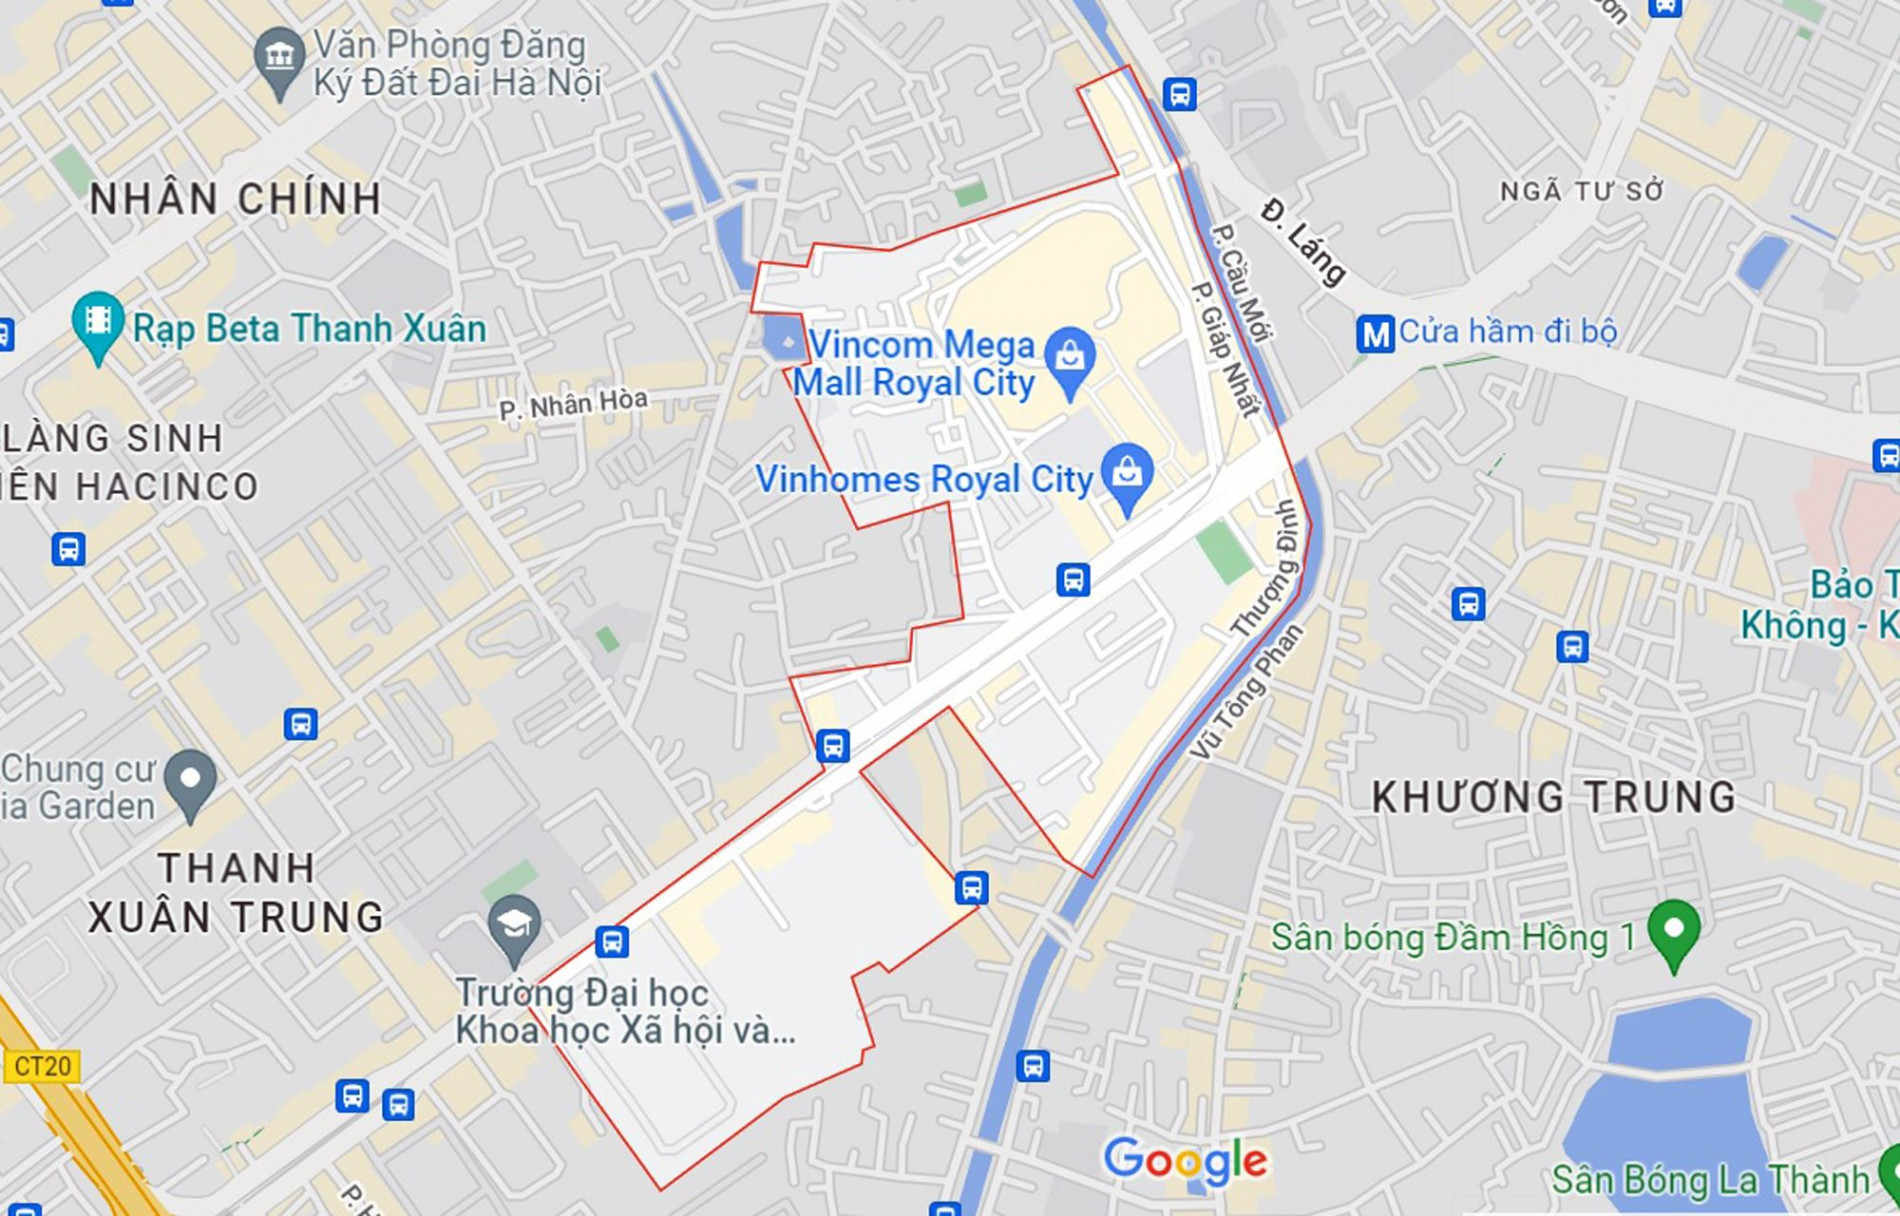 Đường sẽ mở theo quy hoạch ở phường Thượng Đình, Thanh Xuân, Hà Nội (phần 3)